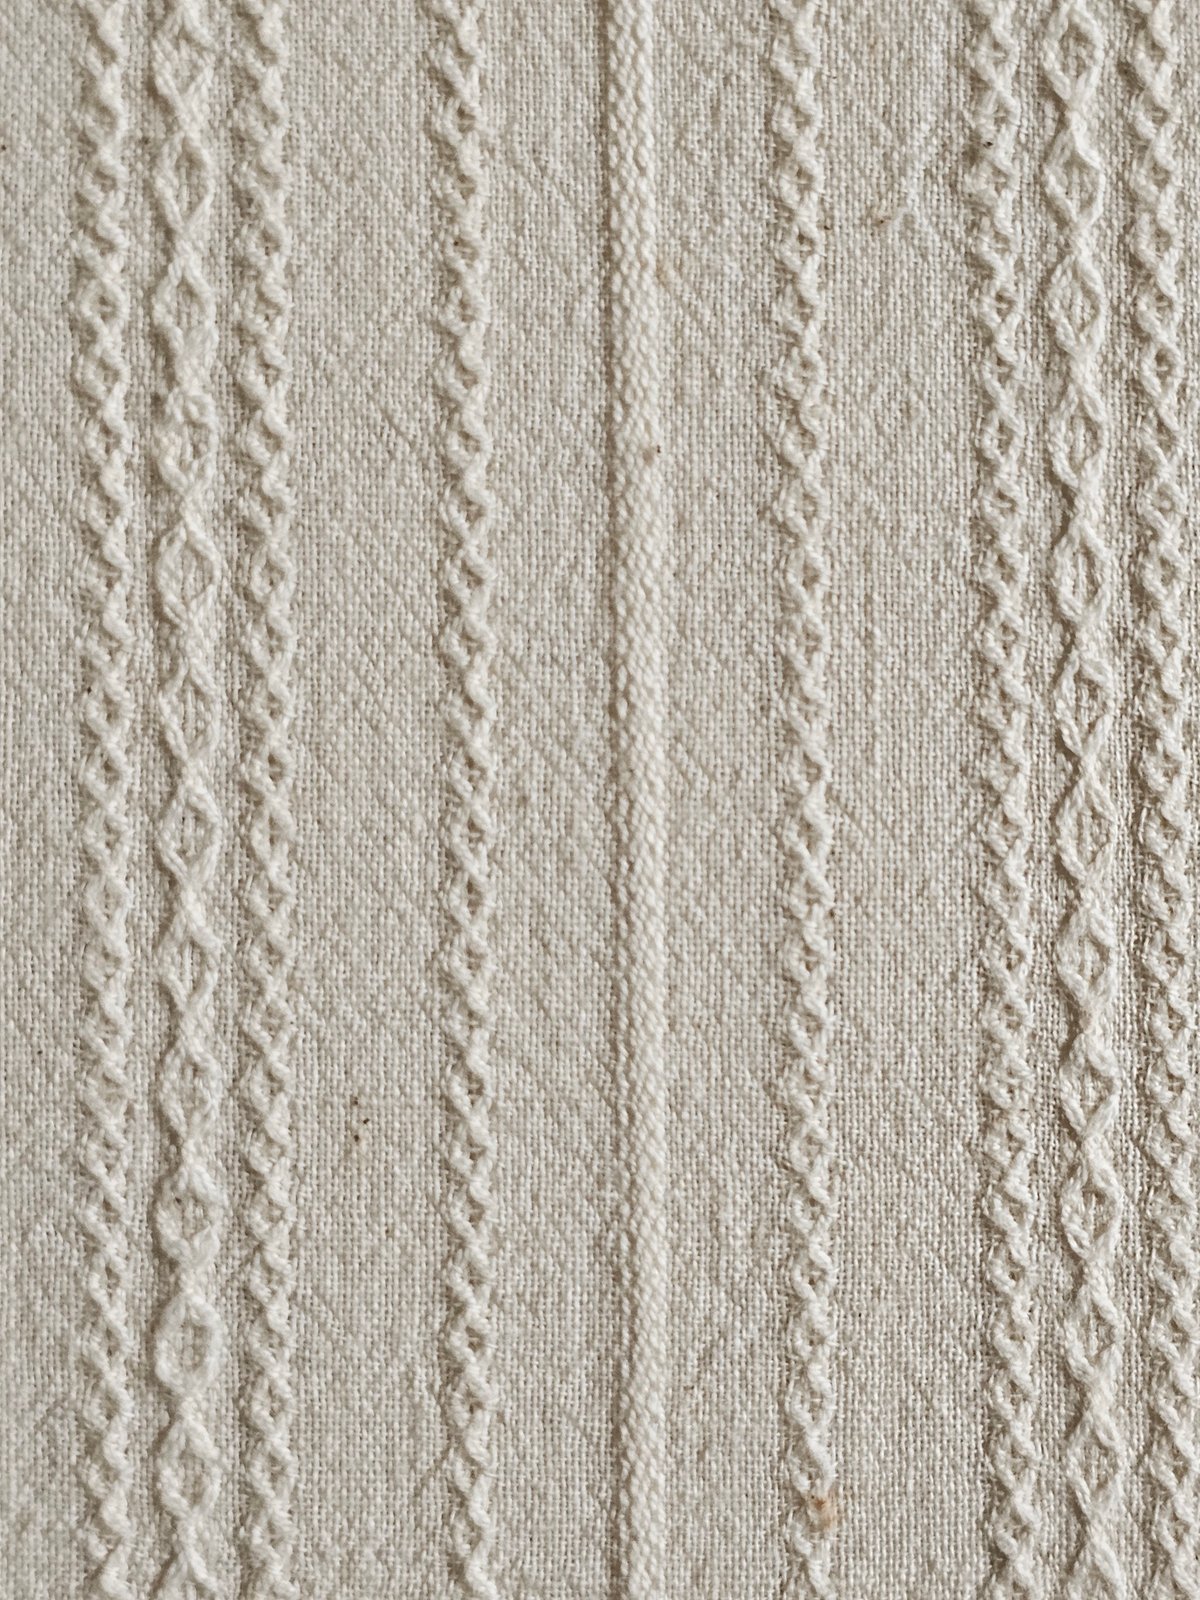 Image of Namaste fabric dobby